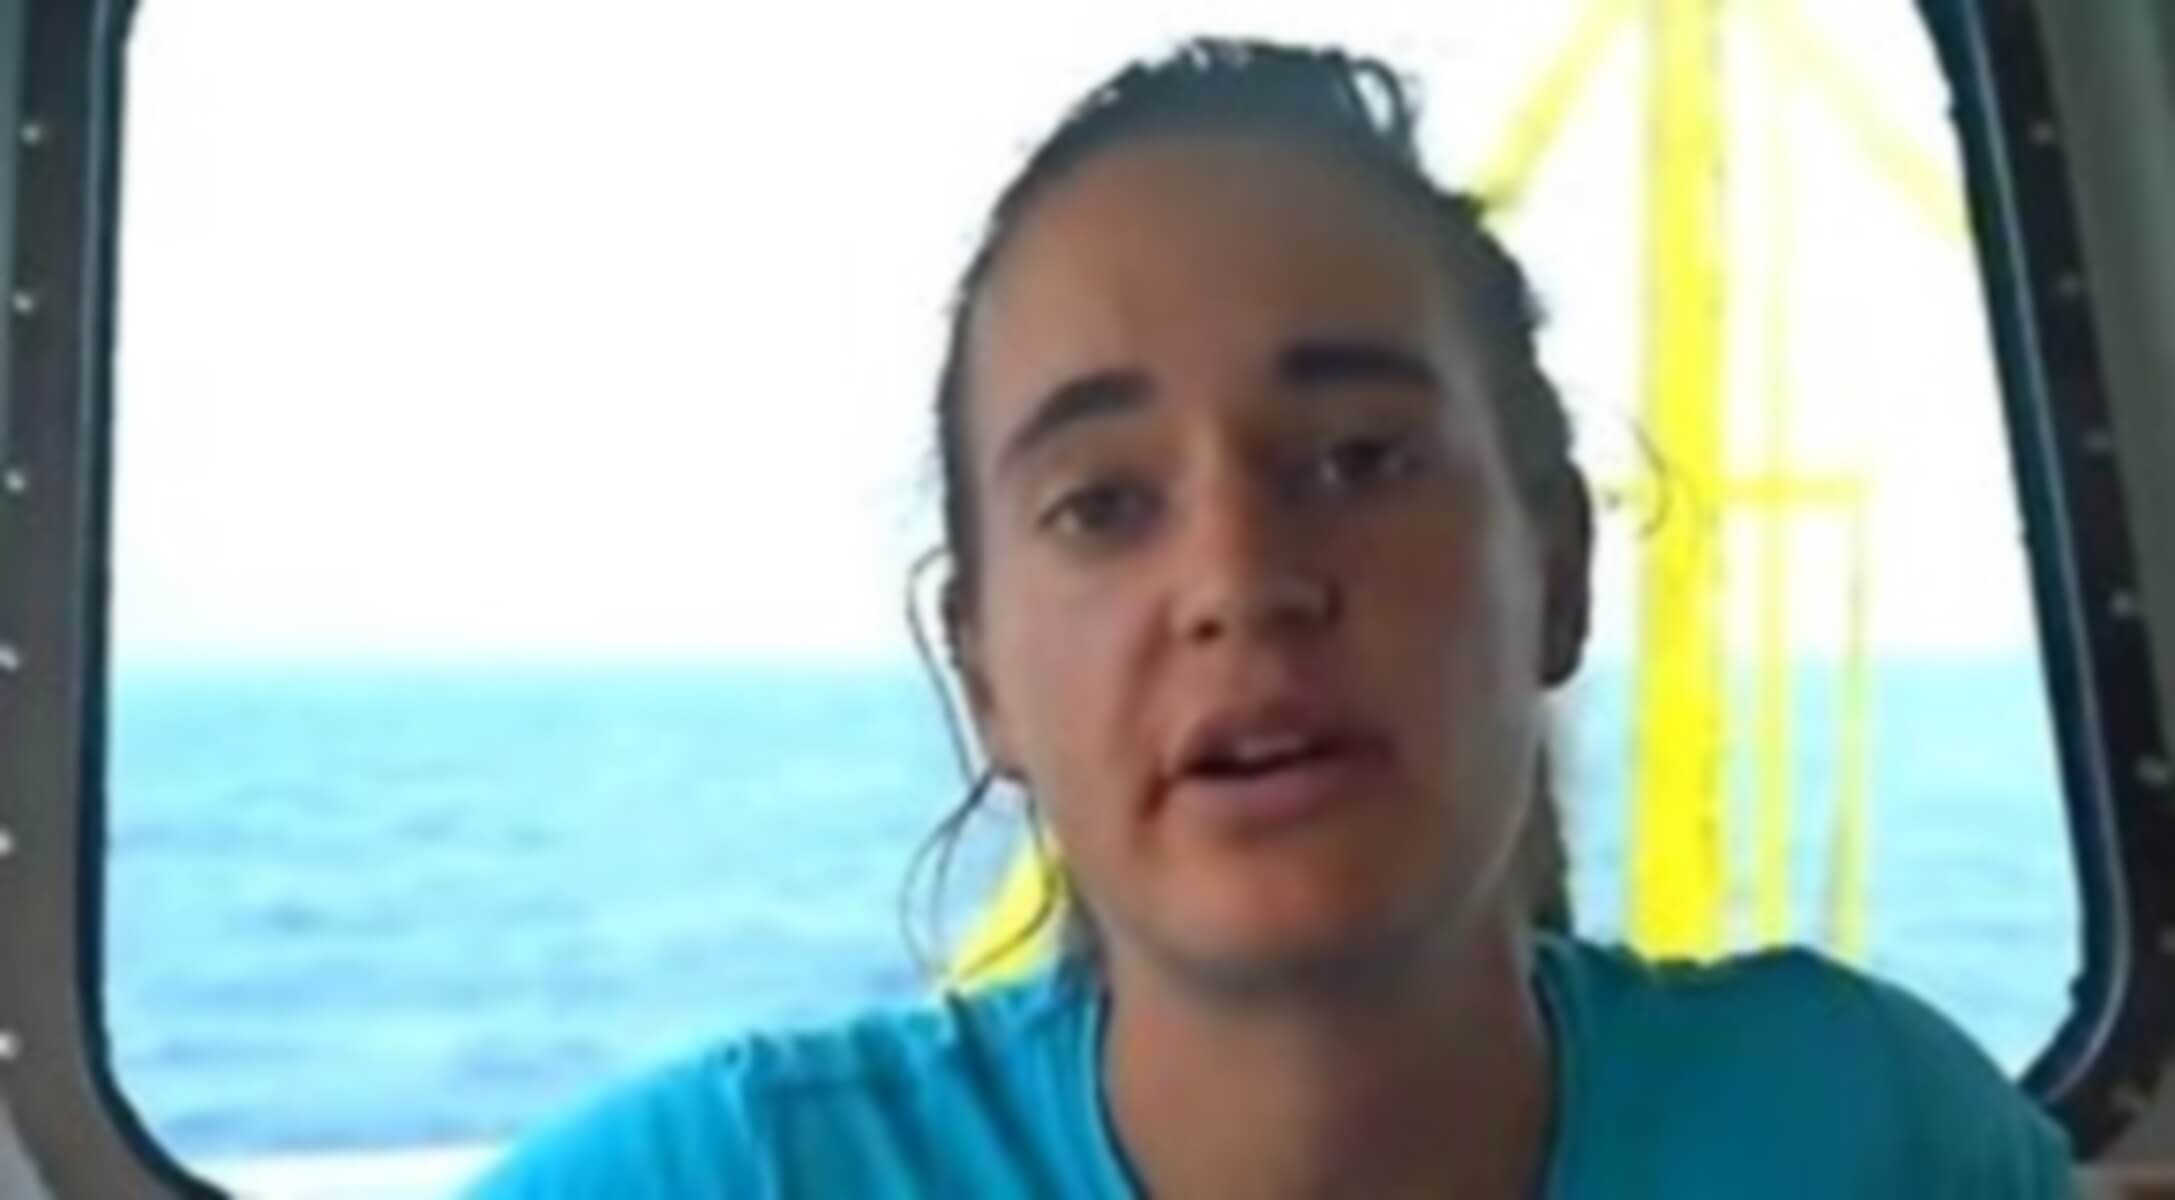 Καρόλα Ράκετε: Αυτή είναι η κυβερνήτης του Sea Watch 3, που αψηφά την οργή του Σαλβίνι